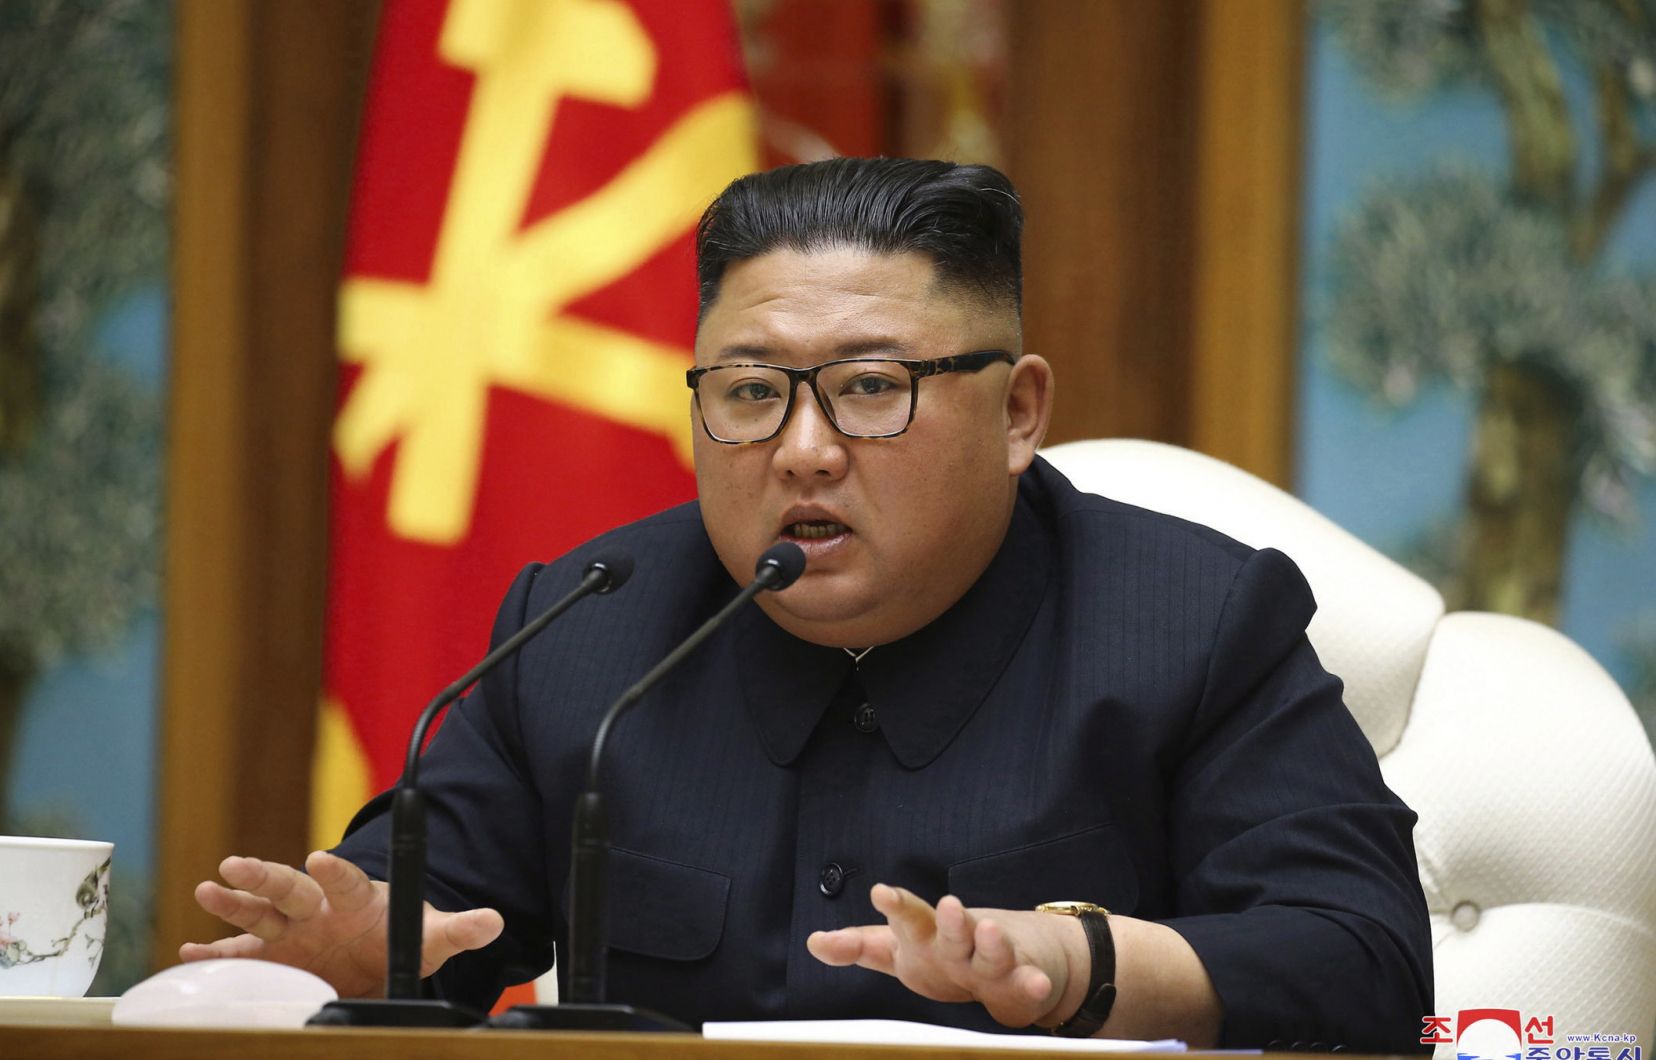 Corée du Nord : le pays reste ferme sur sa position tant que les Etats-Unis auront leur politique hostile